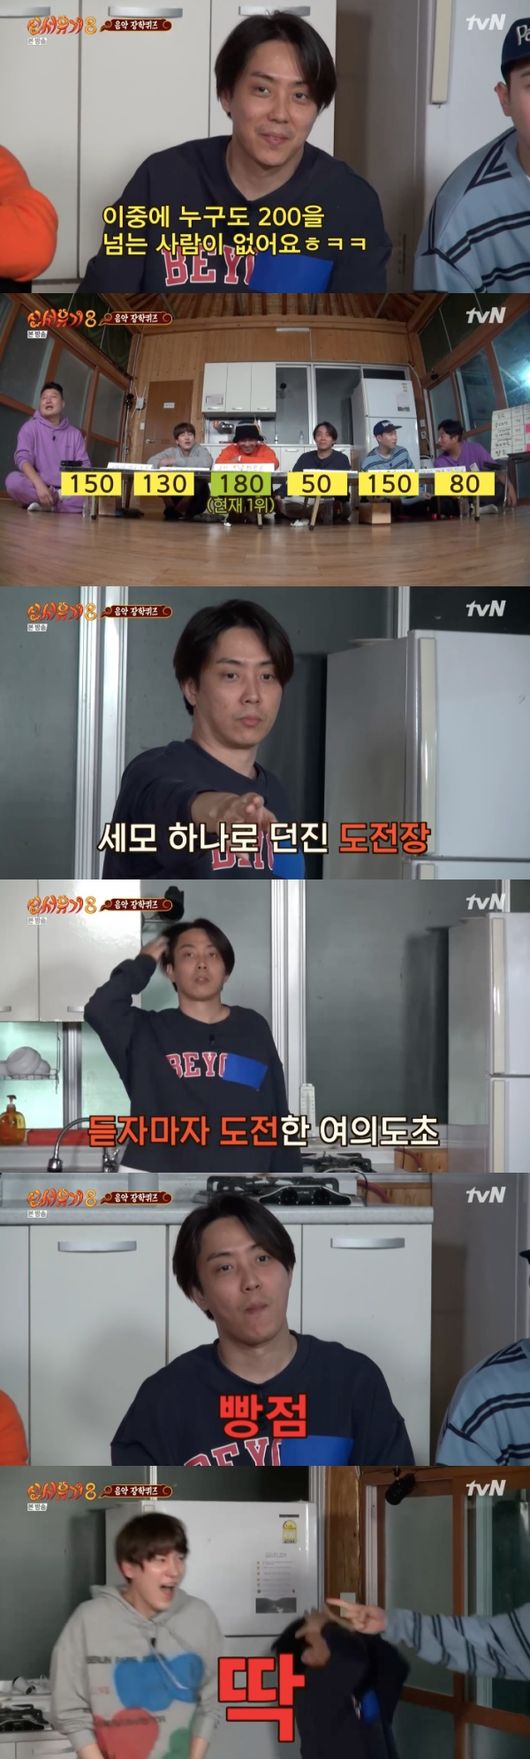 [사진=tvN 방송화면] '신서유기8'에서 은지원이 음악 장학퀴즈에서 충격의 0점을 맞았다. 